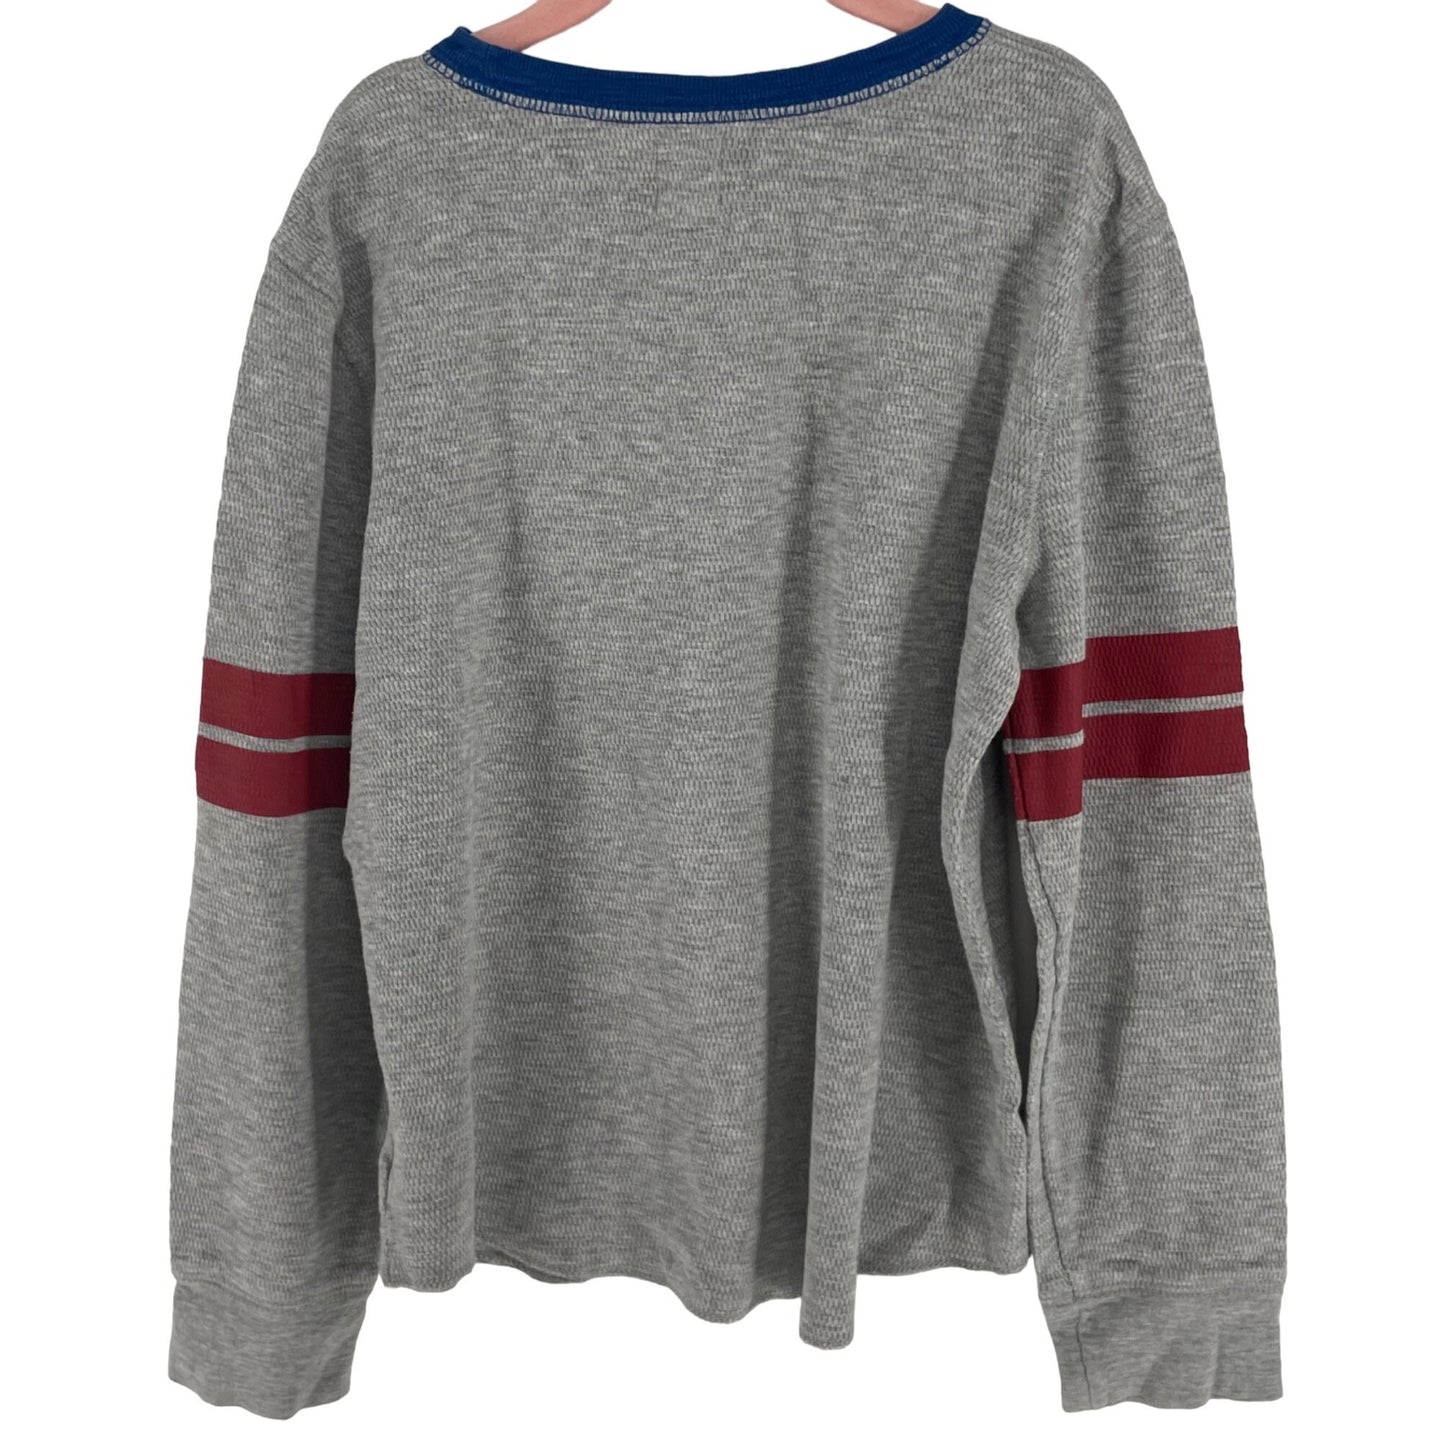 GAP Kids Boy's Size Medium (8) Grey/Red/Blue Long-Sleeved Henley Shirt